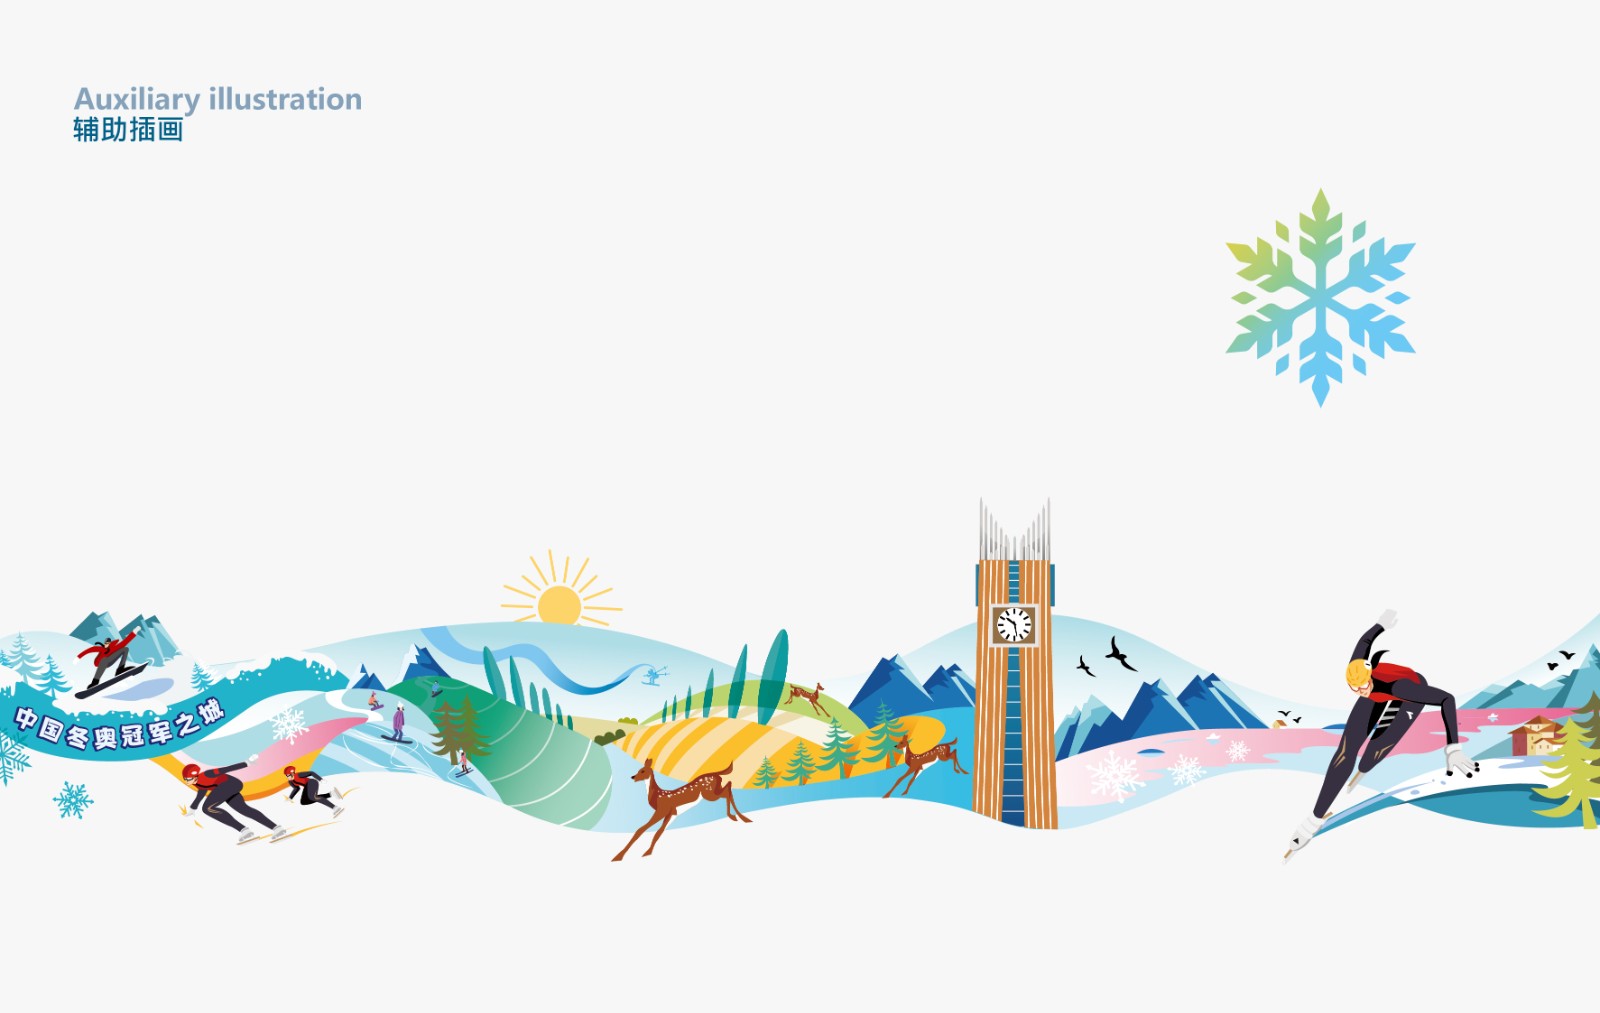 冬奥冠军城市宣传辅助插画设计